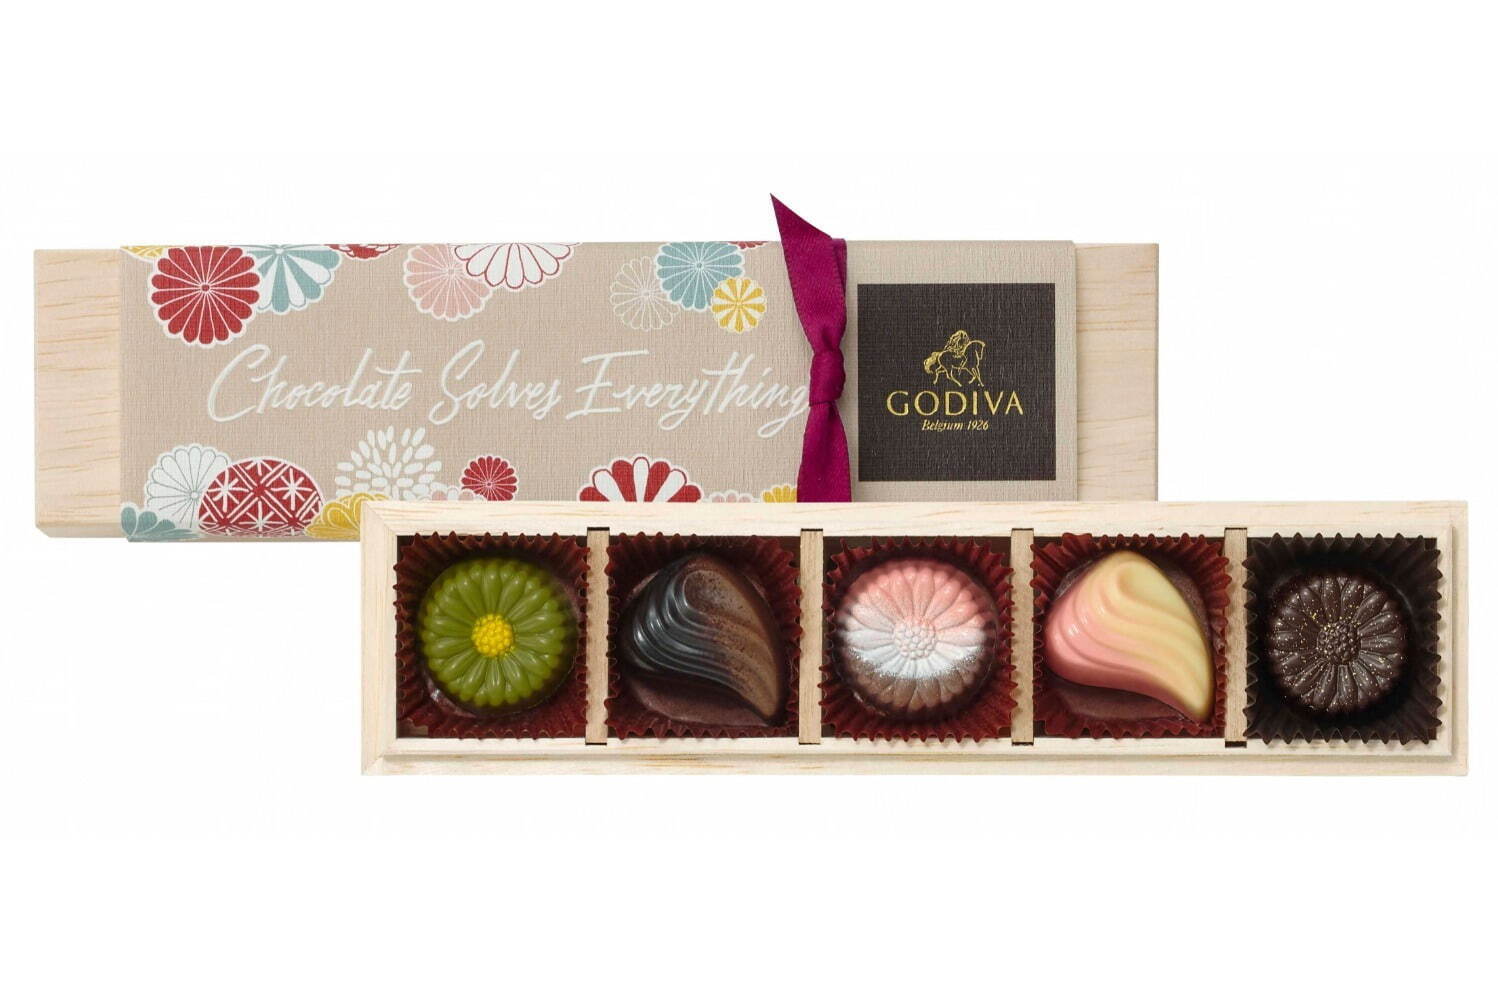 ゴディバ“日本の美”表現した新作チョコレート - 白桃や抹茶の限定 